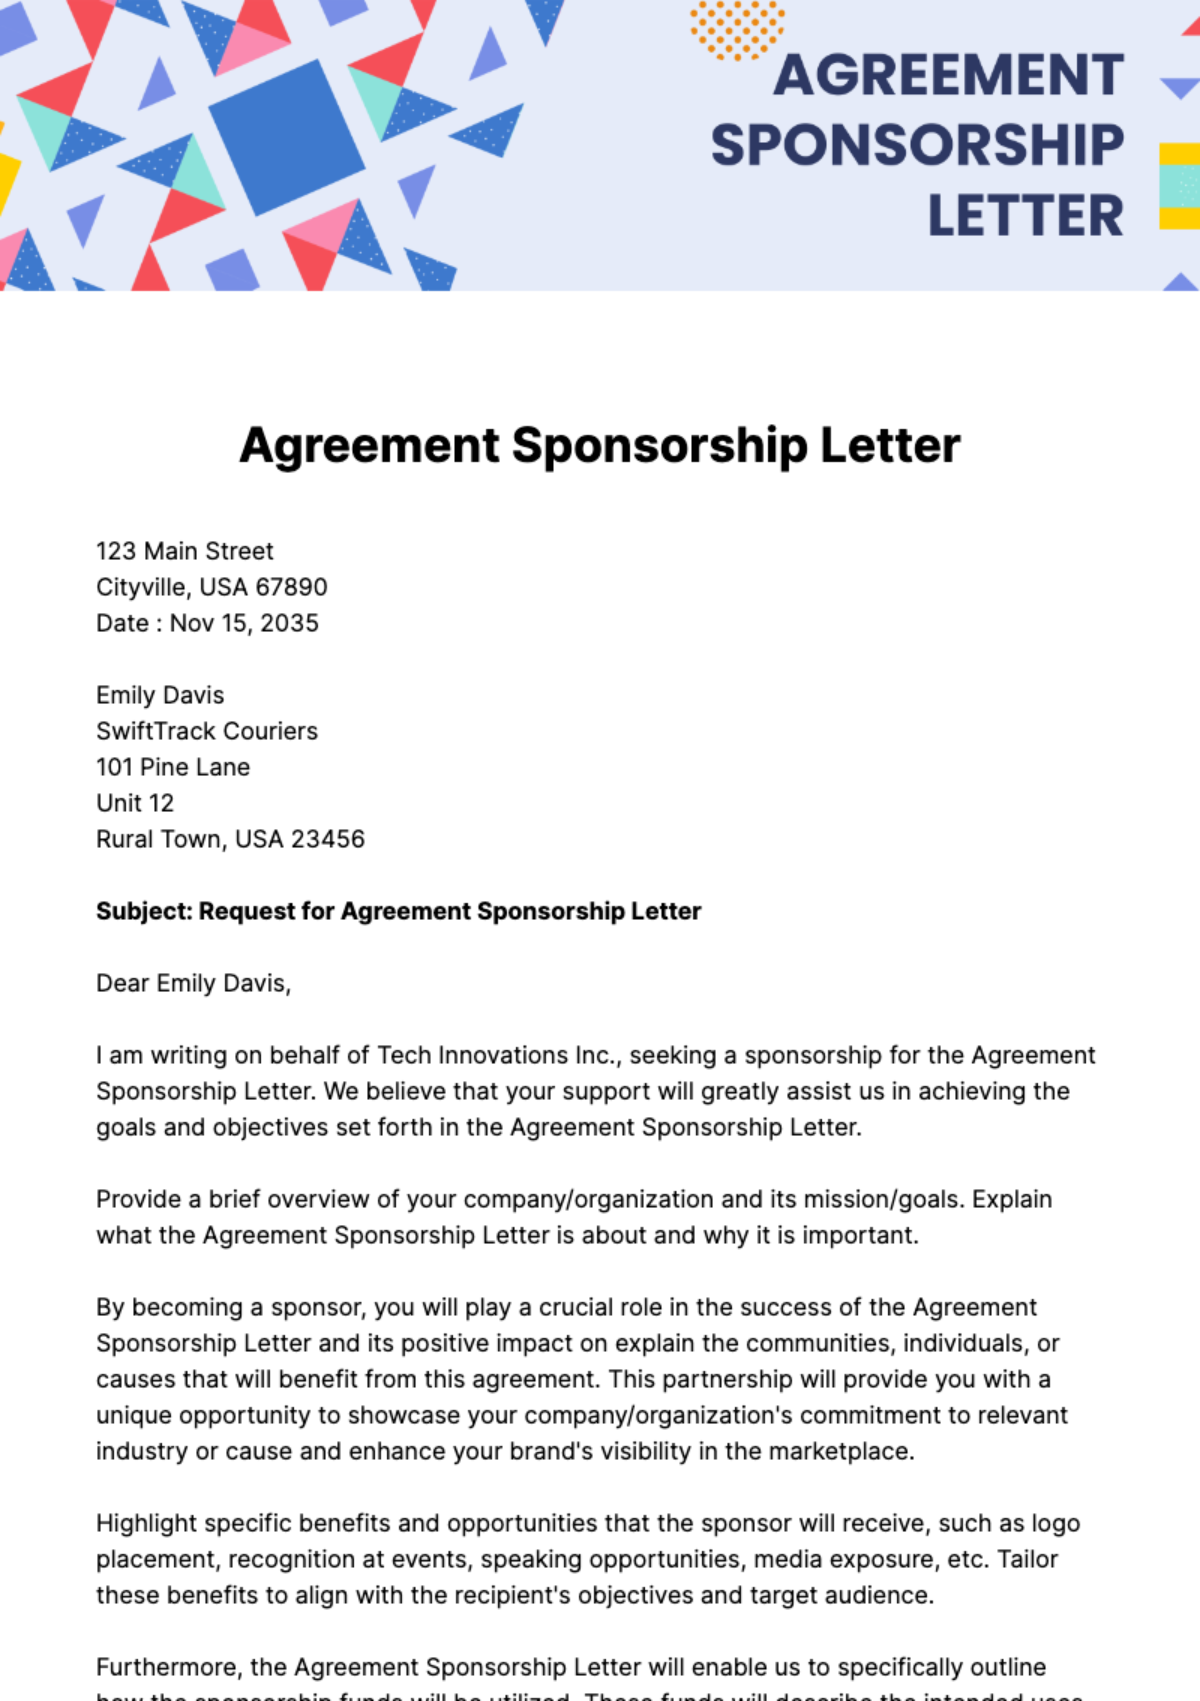 Agreement Sponsorship Letter Template